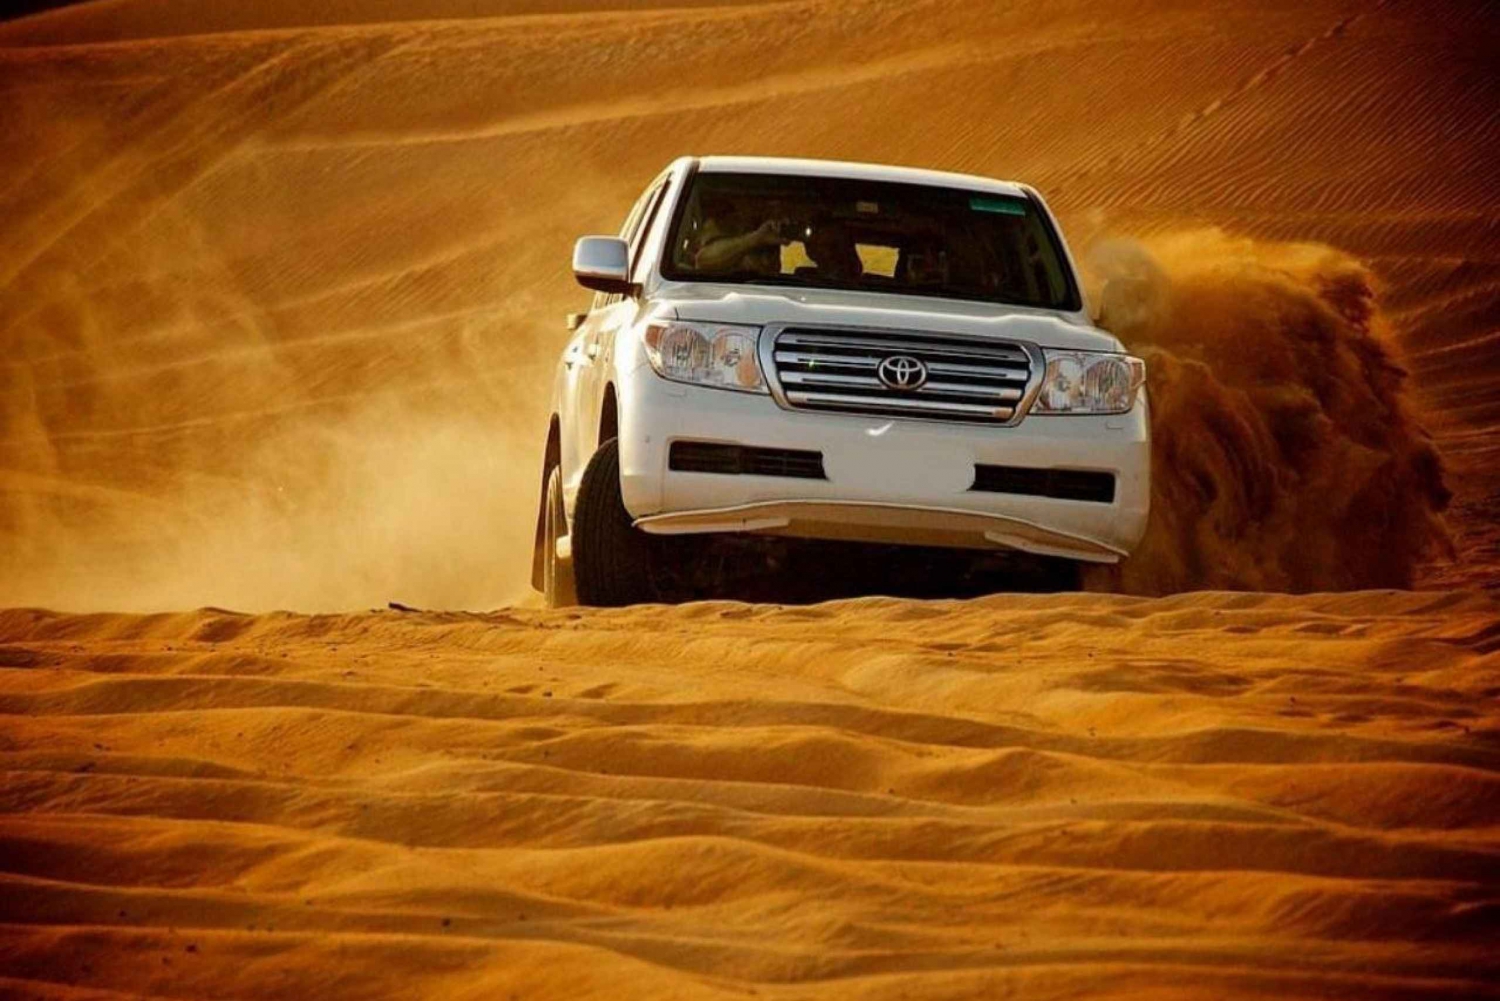 Dubai: Desert Safari, Shows, BBQ, Camel and Sandboard Ride